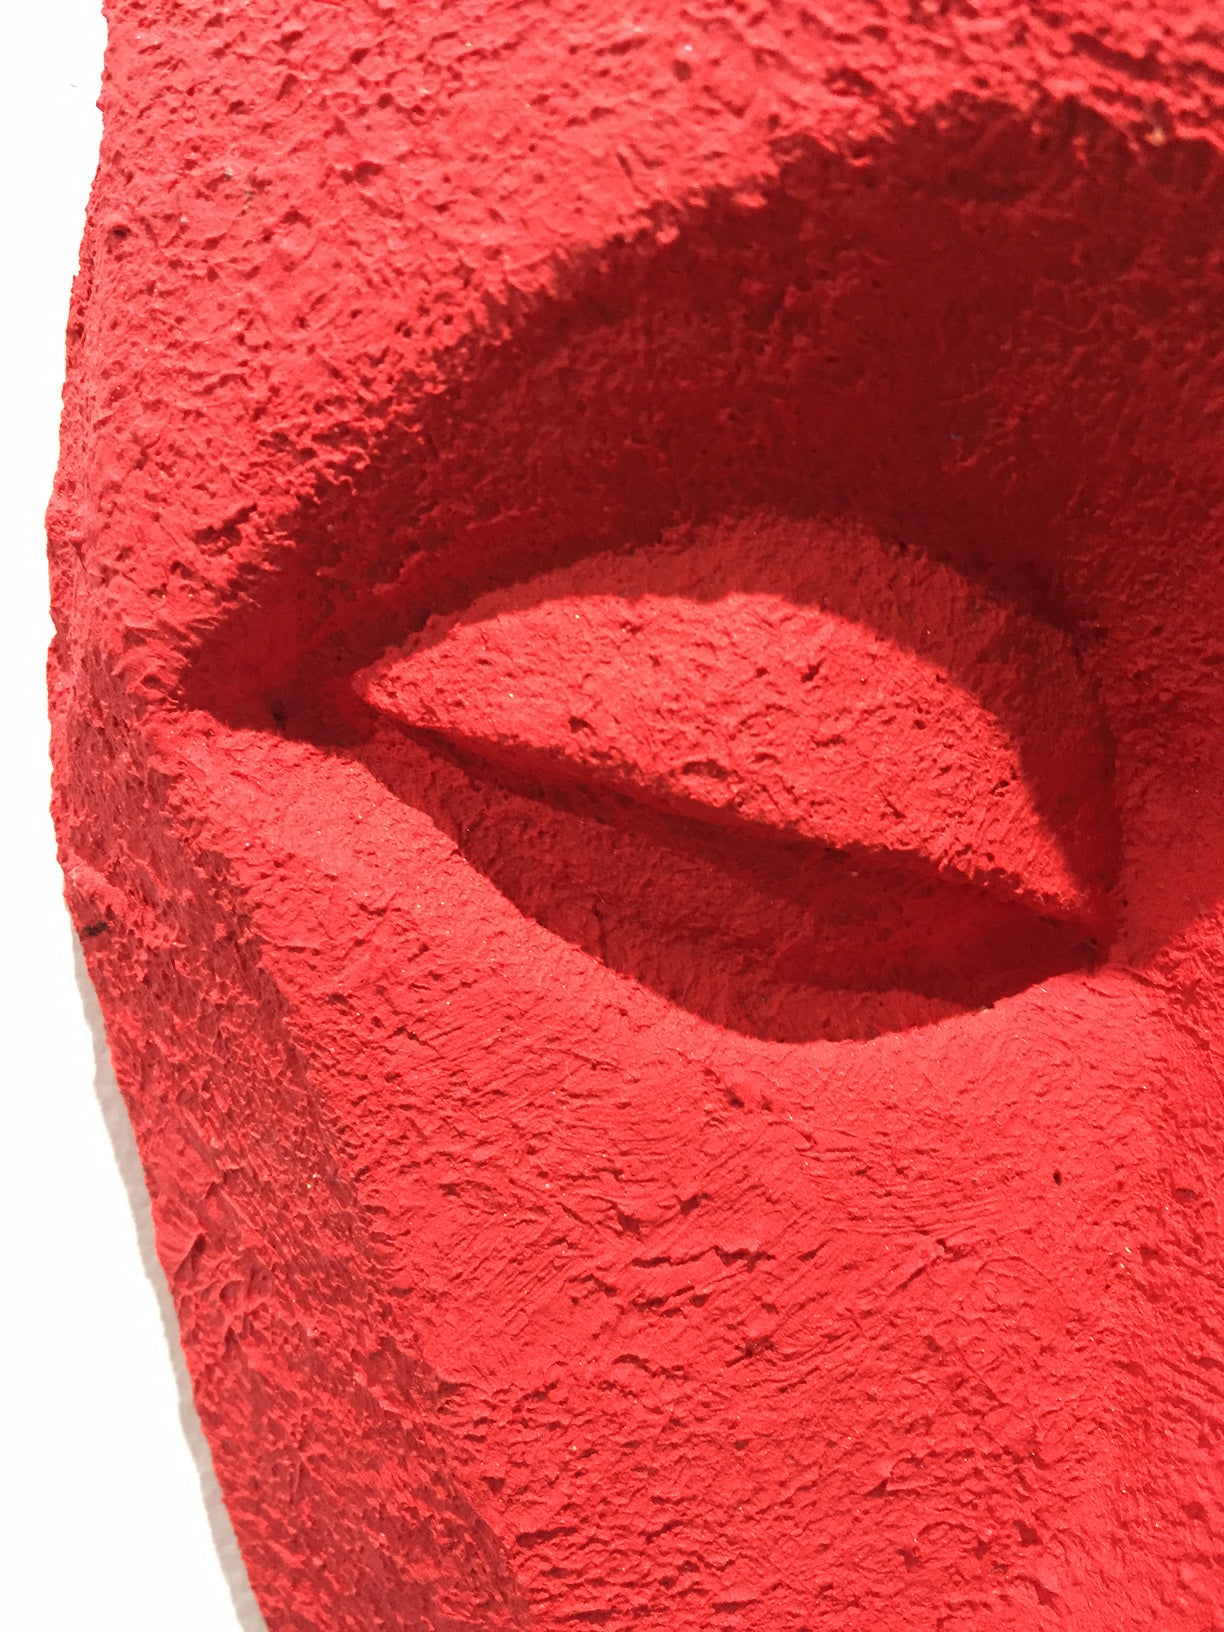 detail of 3d red bronze sculpture of putin